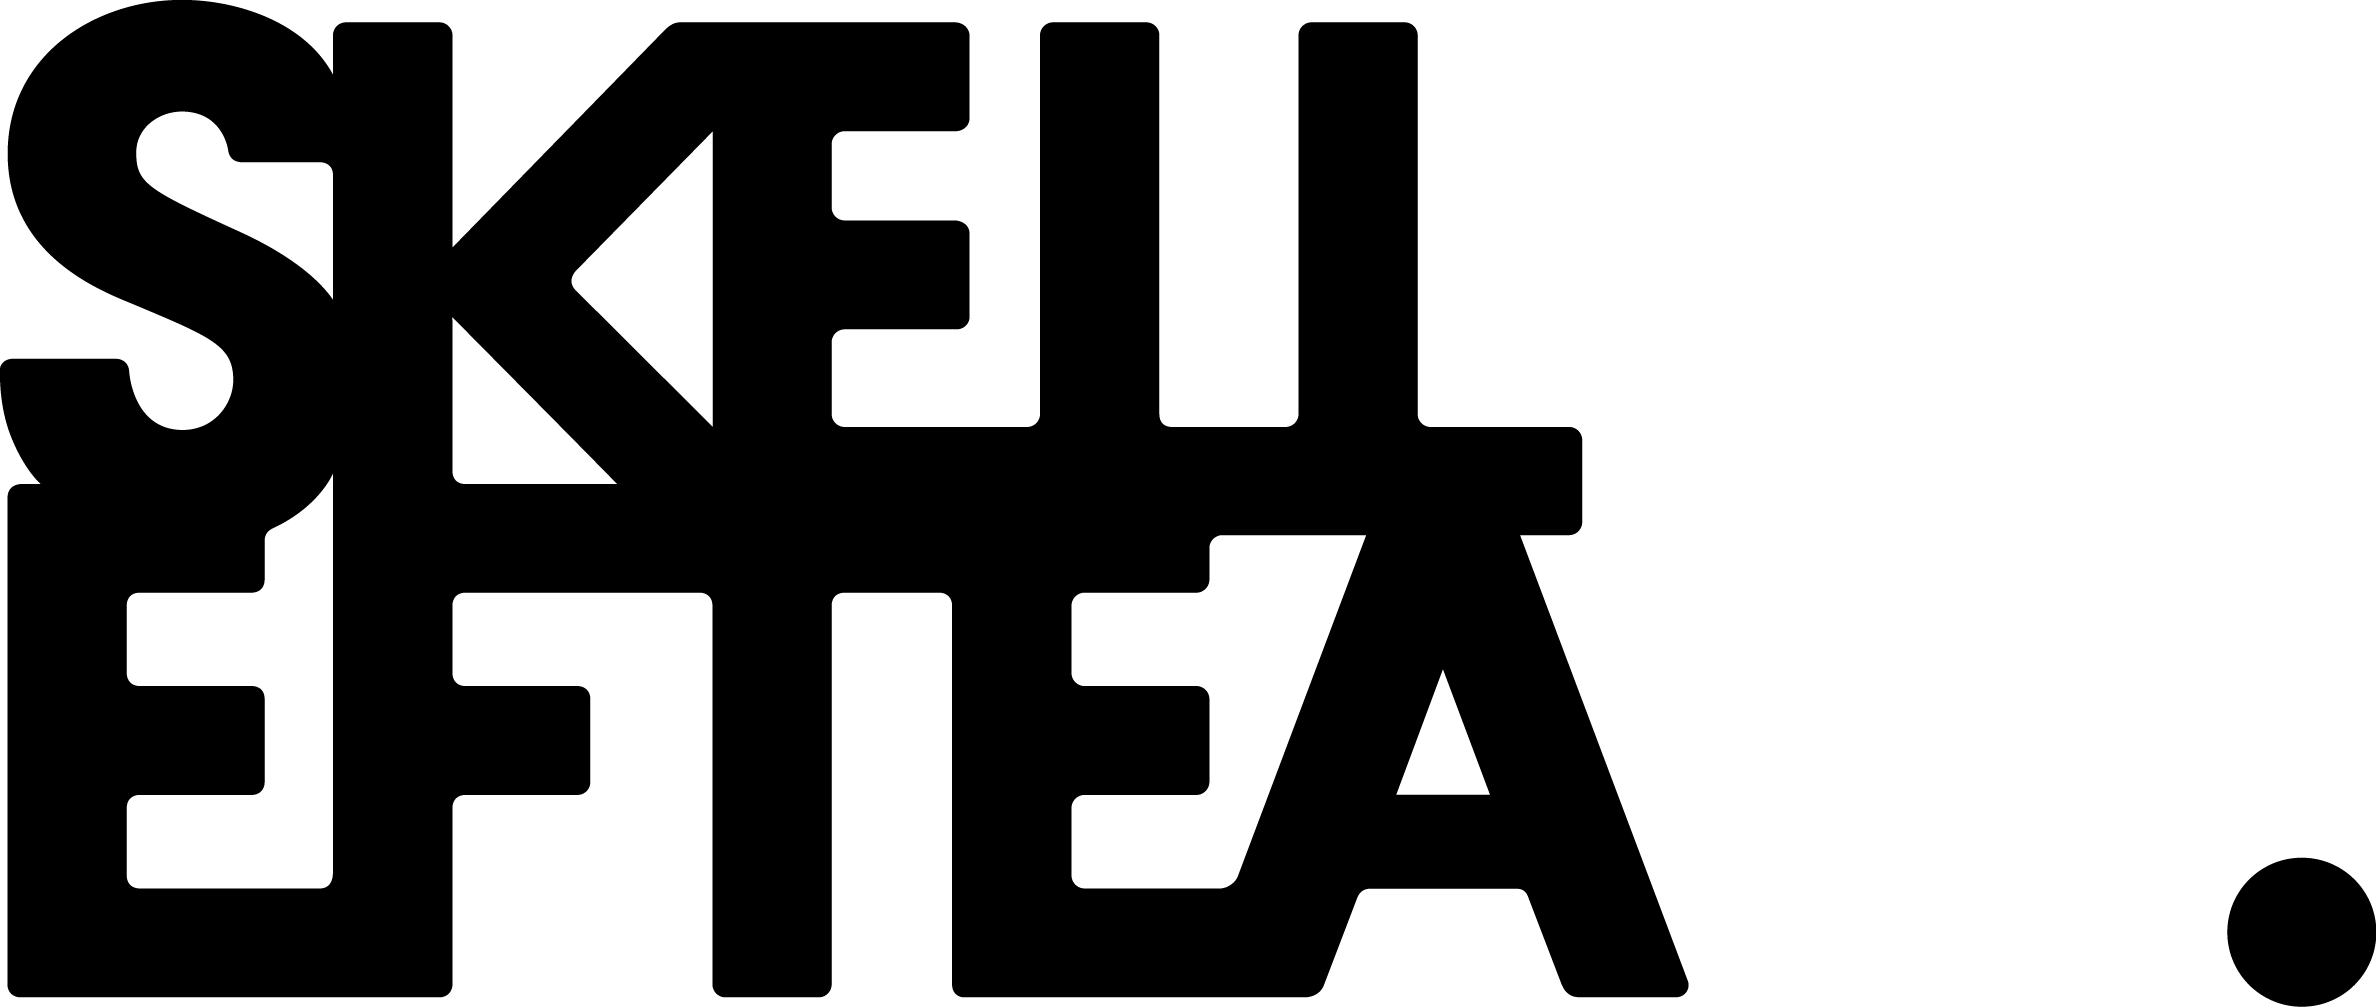 Skellefteå kommuns logotyp